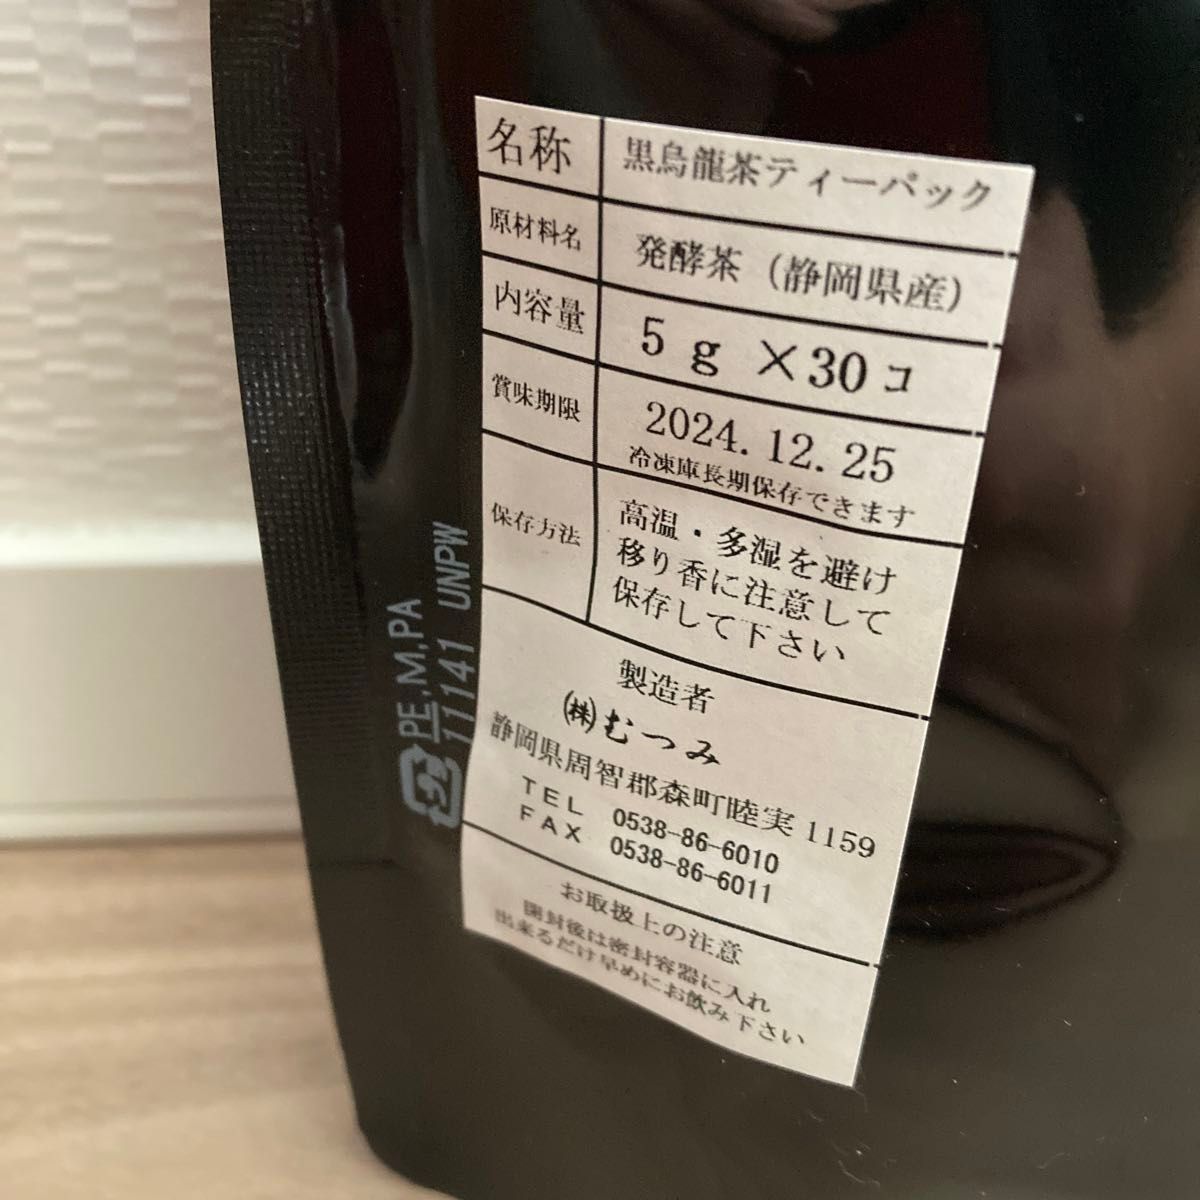 【大人気の静岡県産茶葉100%使用】プレミアム黒烏龍茶 健康茶